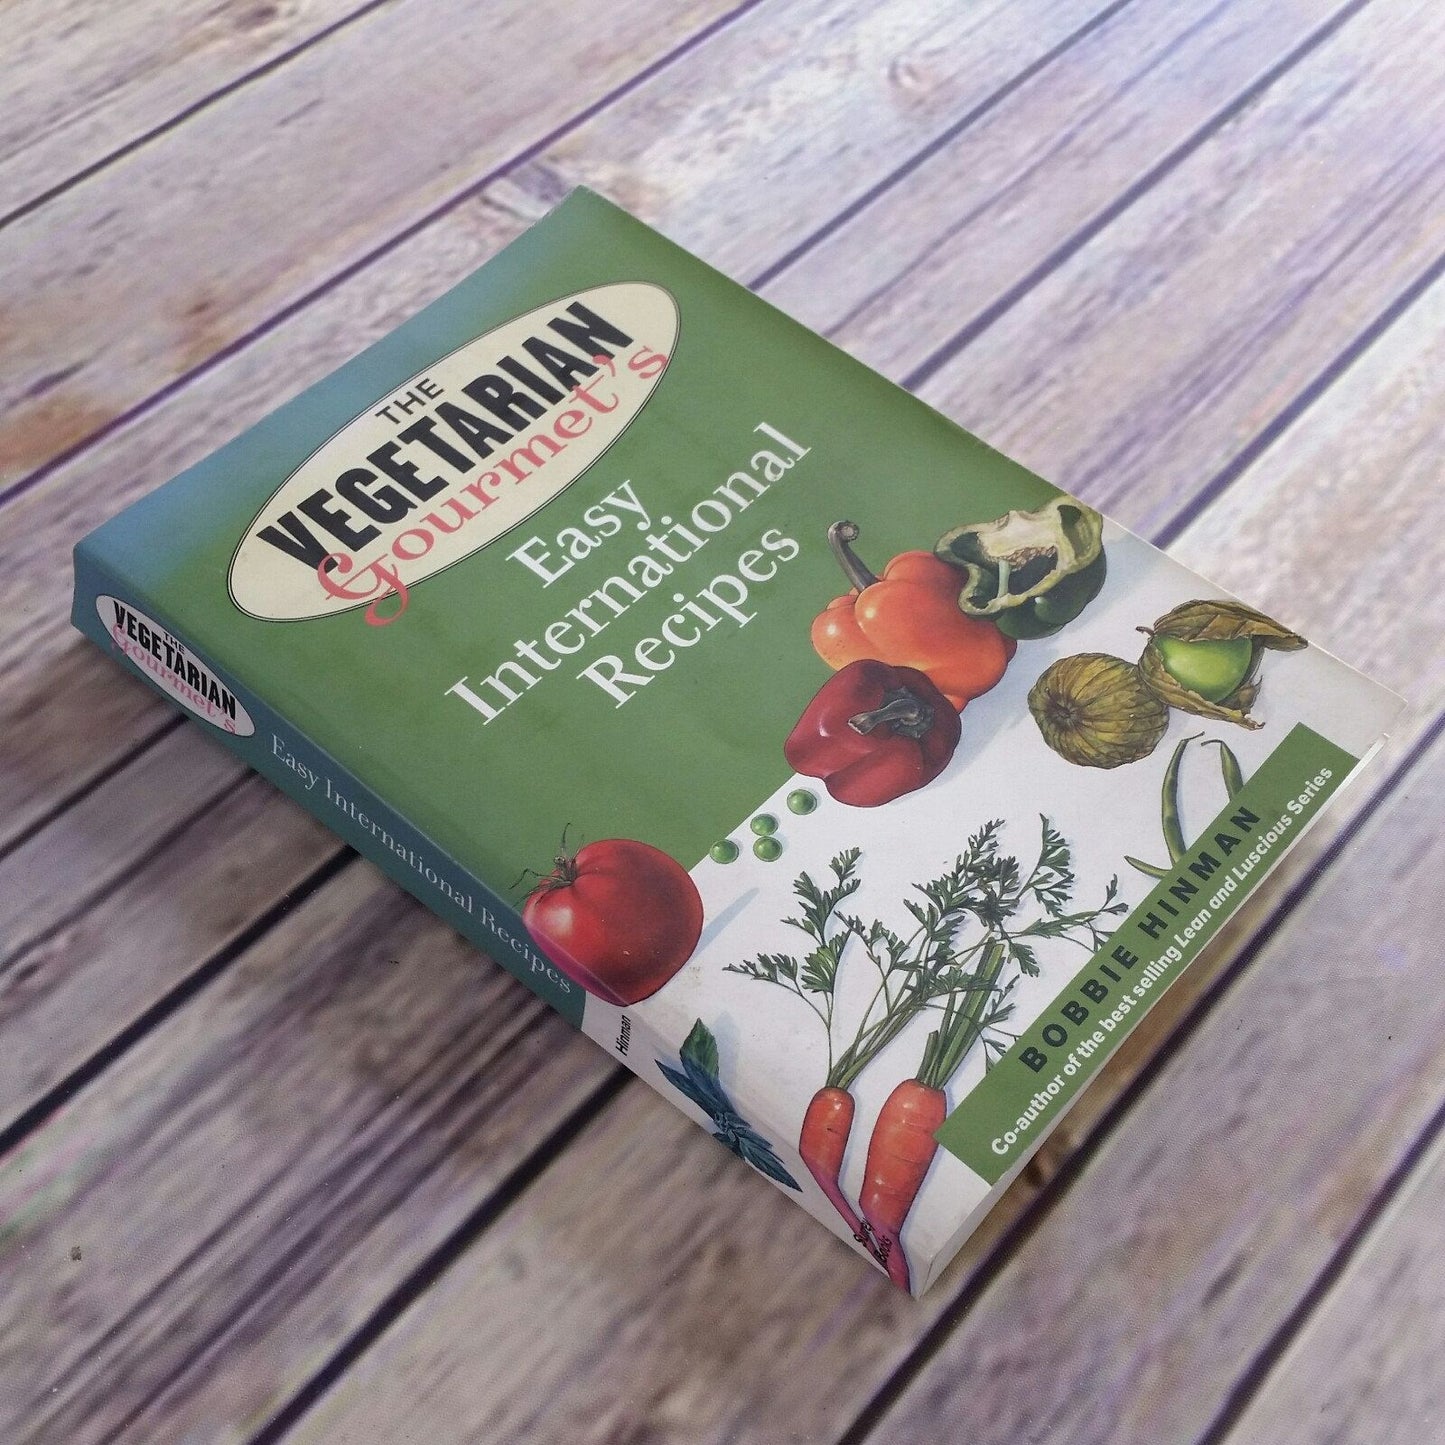 Vintage Cookbook The Vegetarian Gourmet Easy International Recipes 2001 Bobbie Hinman Paperback International Vegetarian Recipes